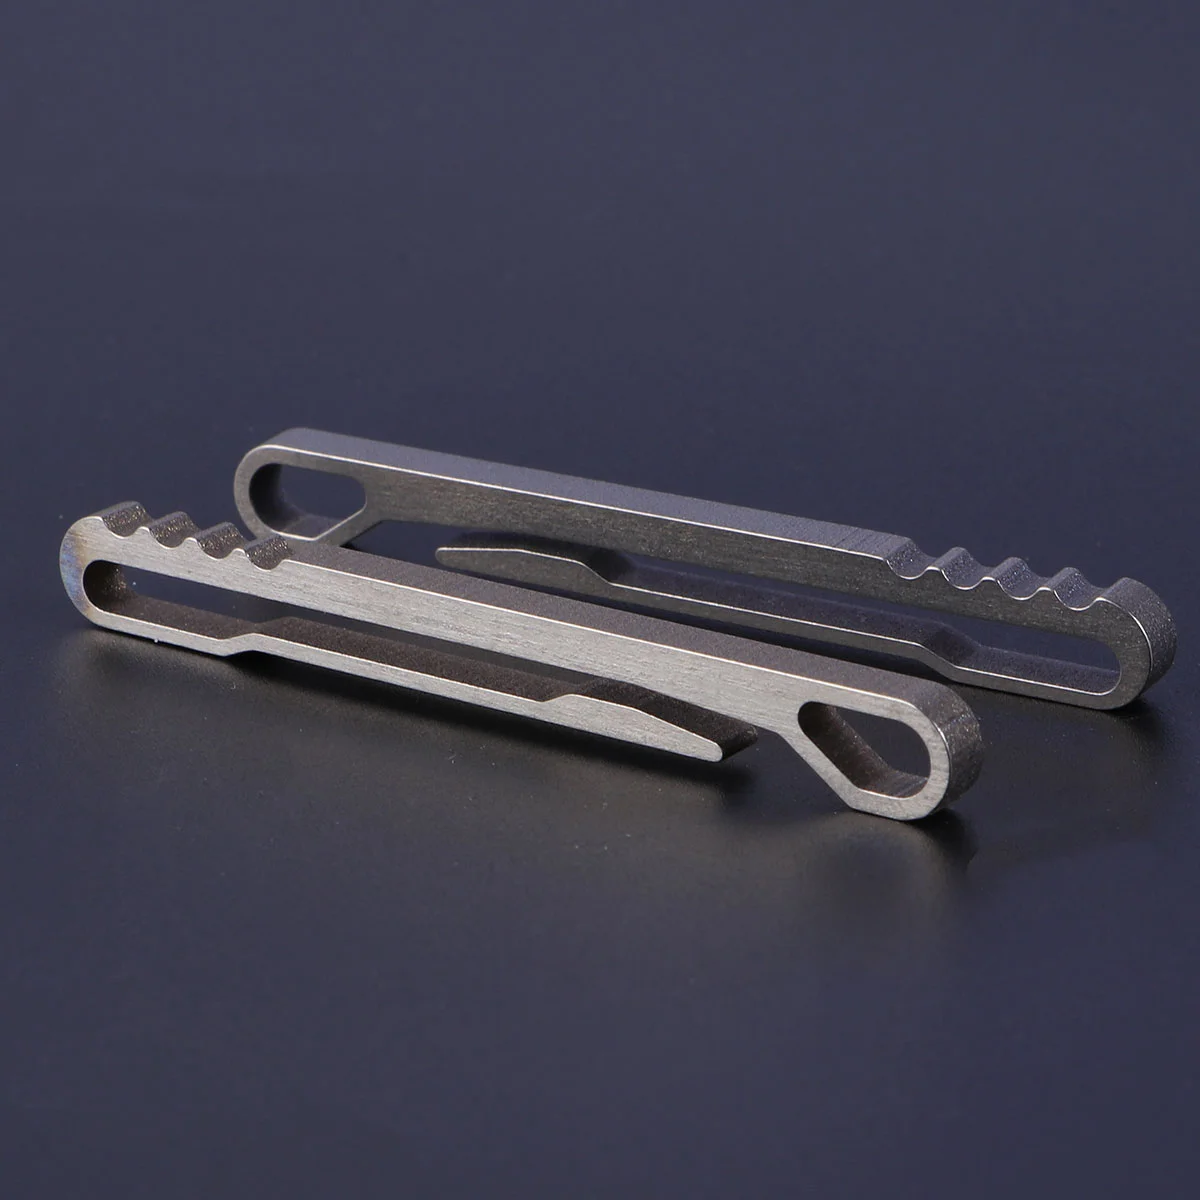 

2 PCS Bottle Opener Keyring Pocket Clip Buckle Spring Snap Belt Clips Spoon Hook Keychain Carabiner